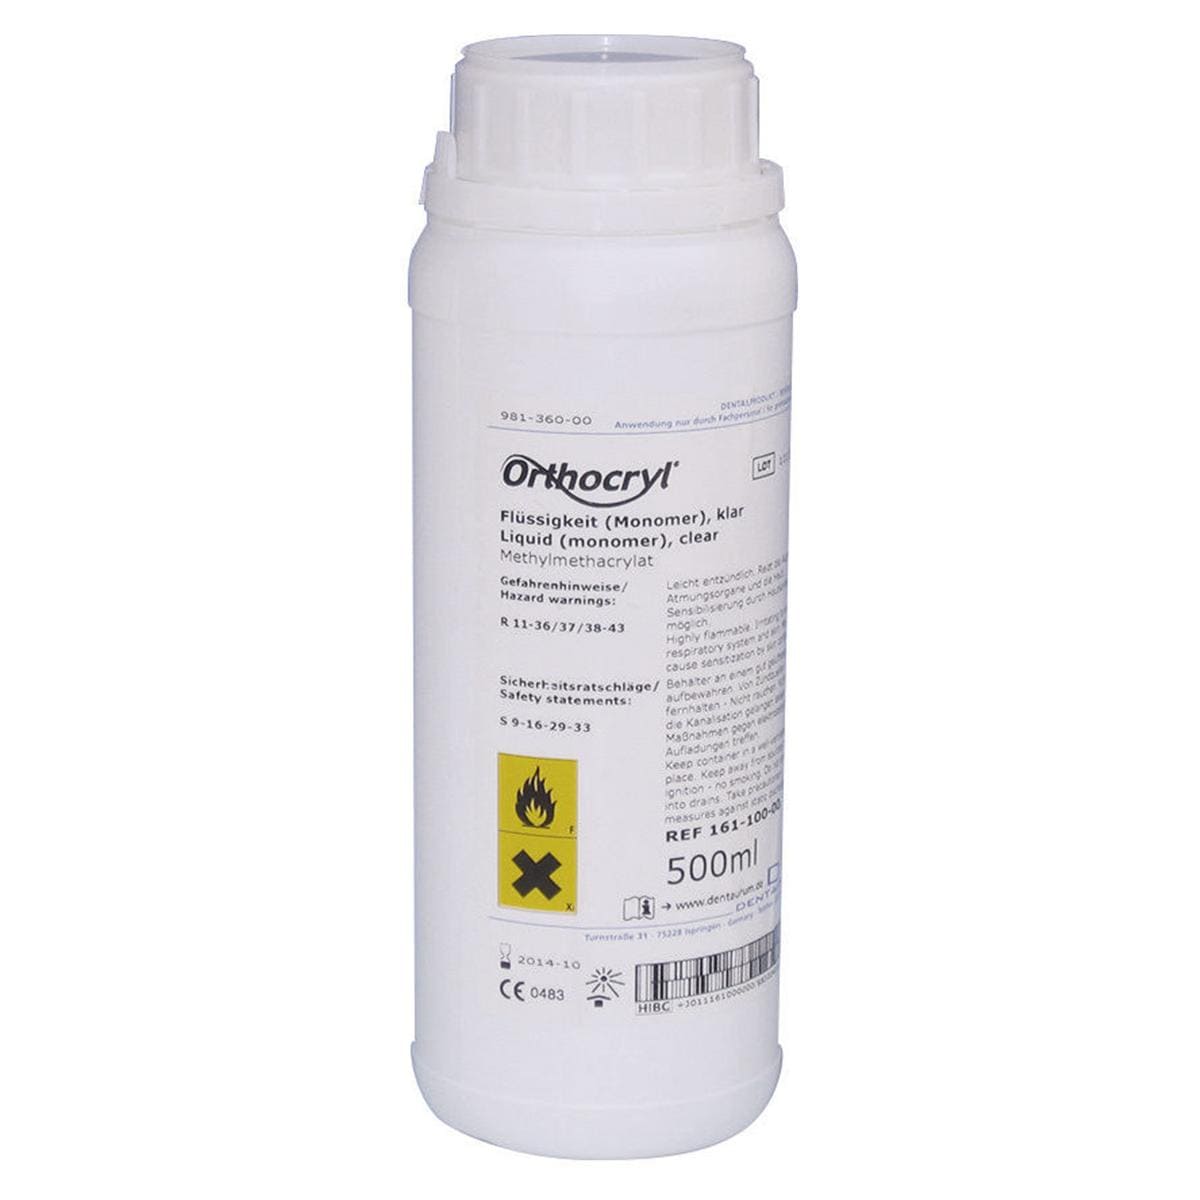 ORTHOCRYL LIQUIDI - 161-100 - trasparente 500 ml